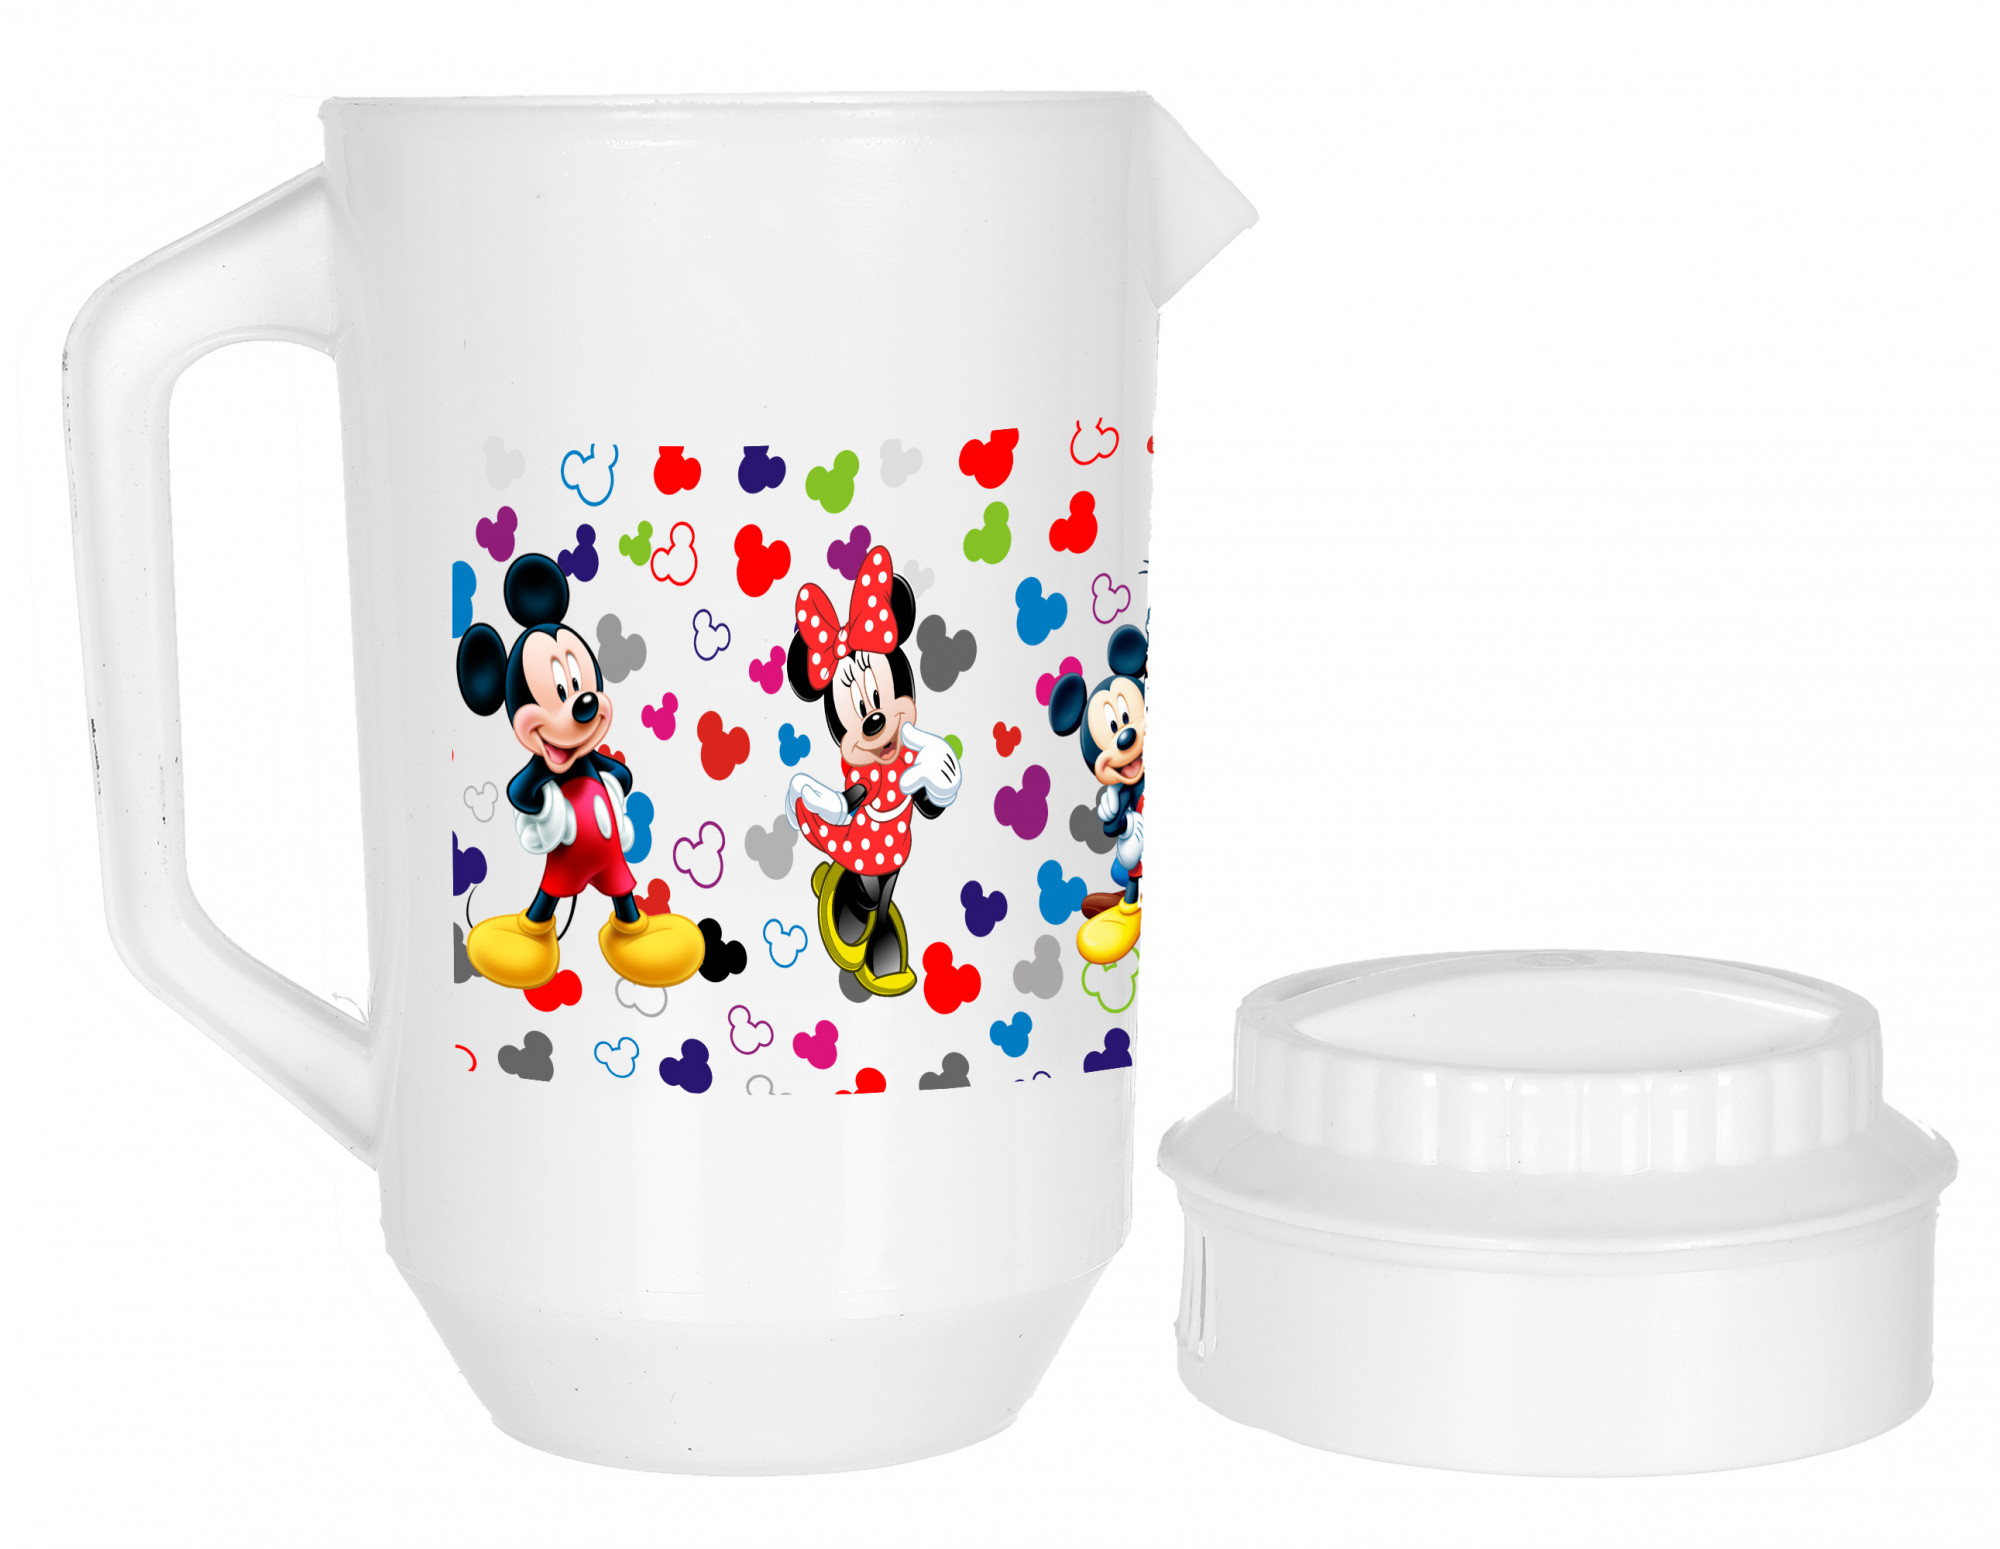 Kuber Industries Disney Team Mickey Print Unbreakable Multipurpose Plastic Water & Juice Jug With Lid,2 Ltr (Set Of 2, Cream & White)